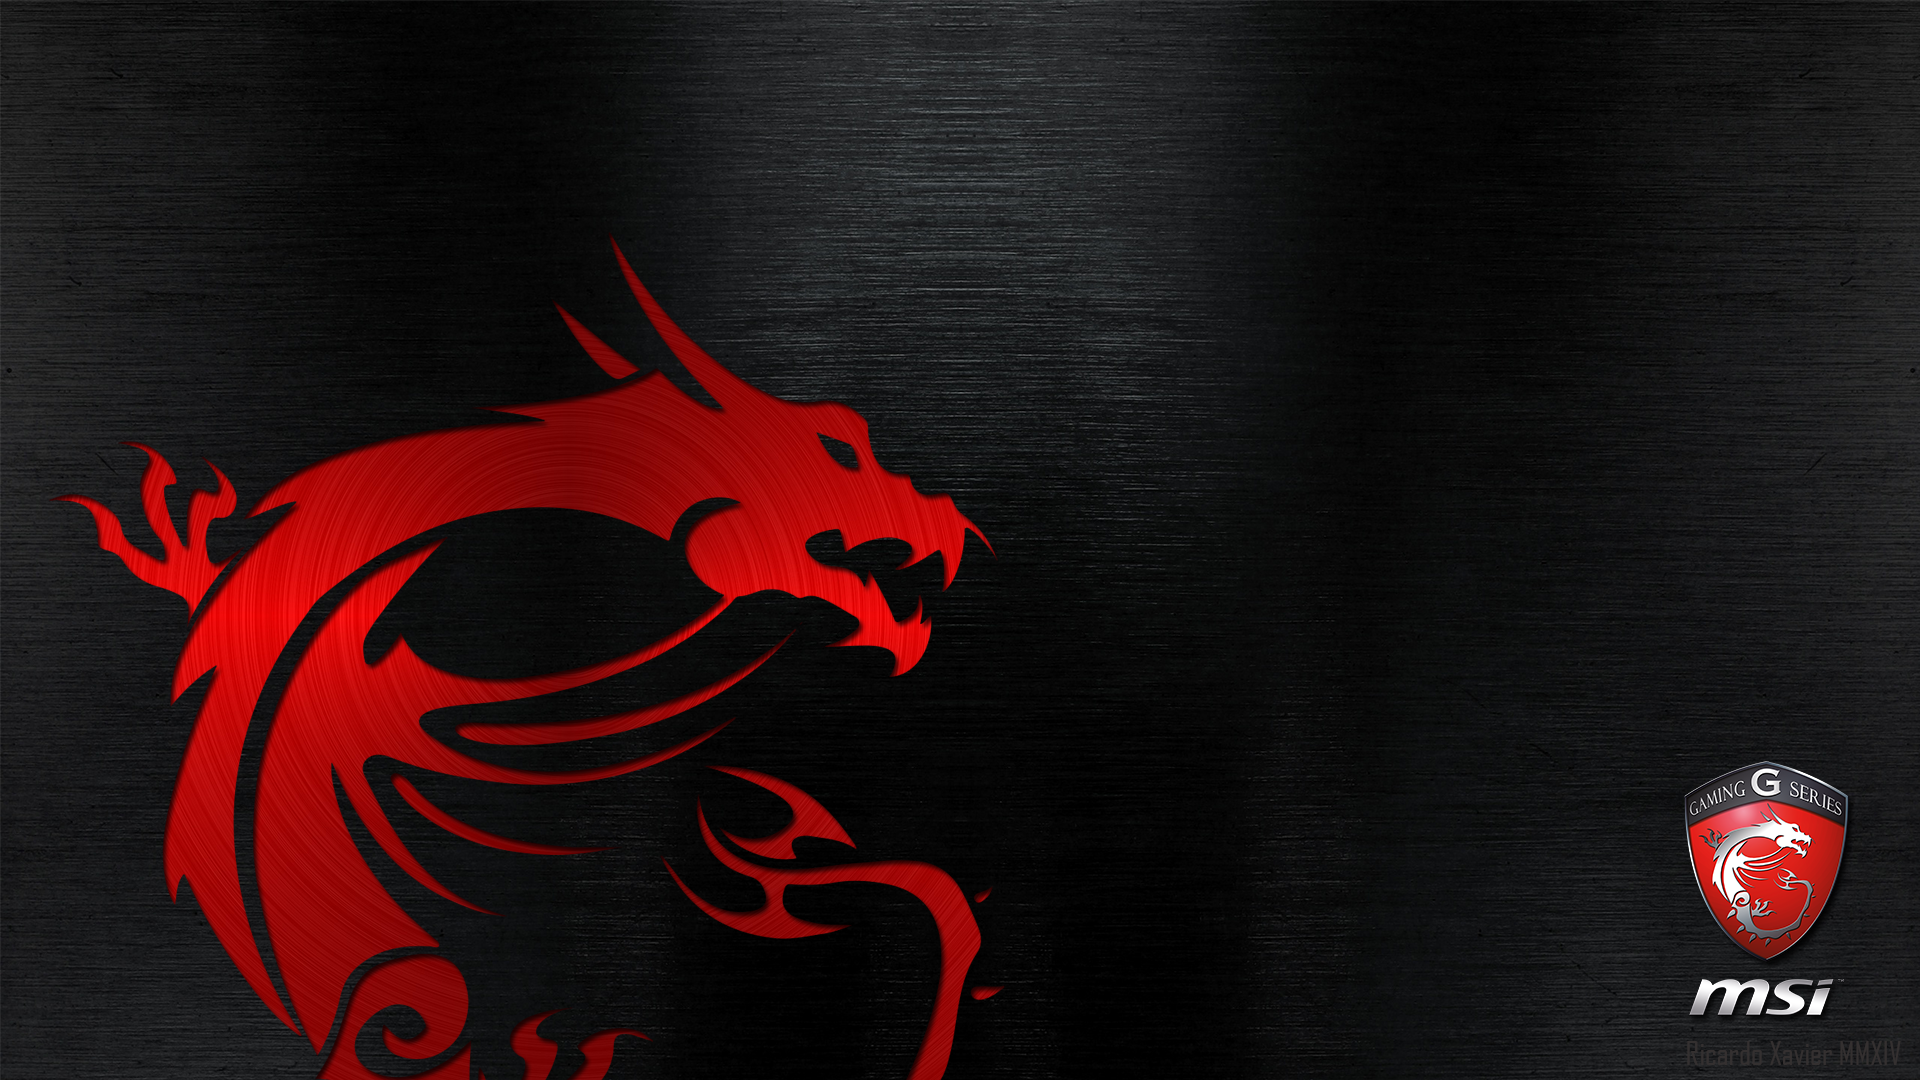 MSI Gaming Wallpaper red dragon emobossed MSI